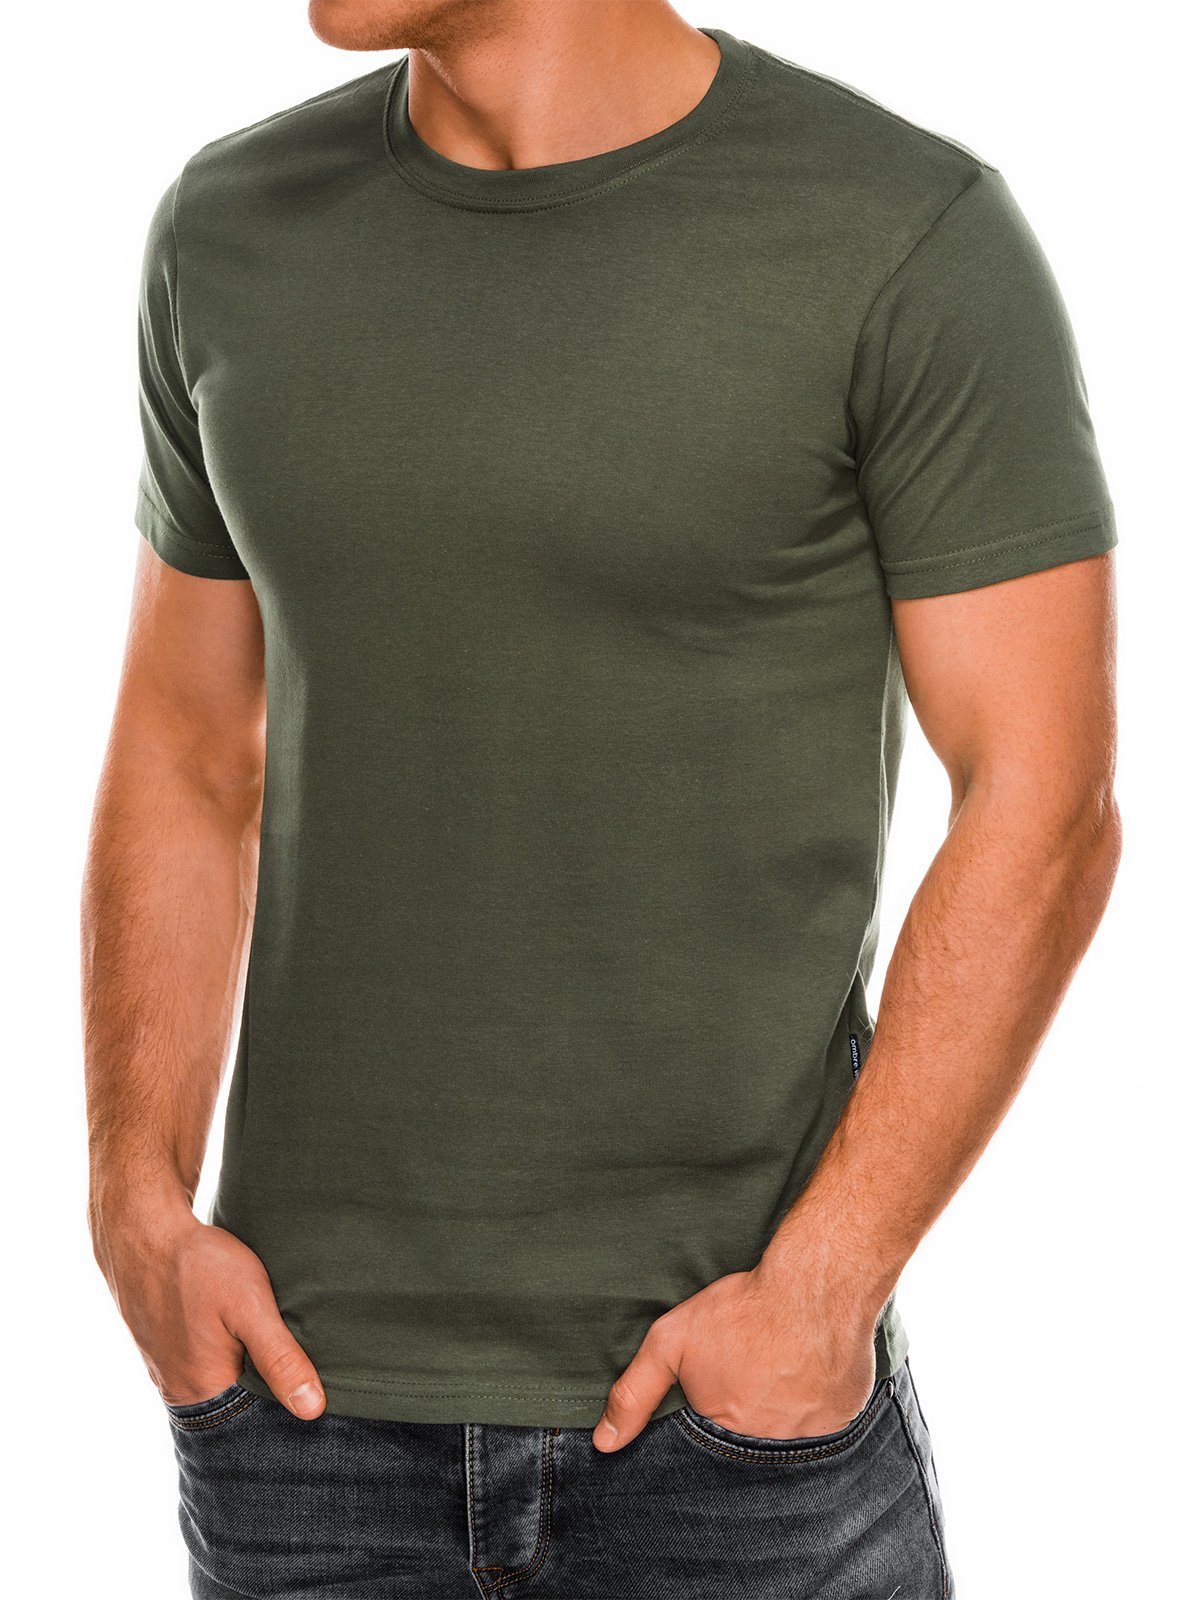 Men's plain t-shirt S884 - khaki | MODONE wholesale - Clothing For Men